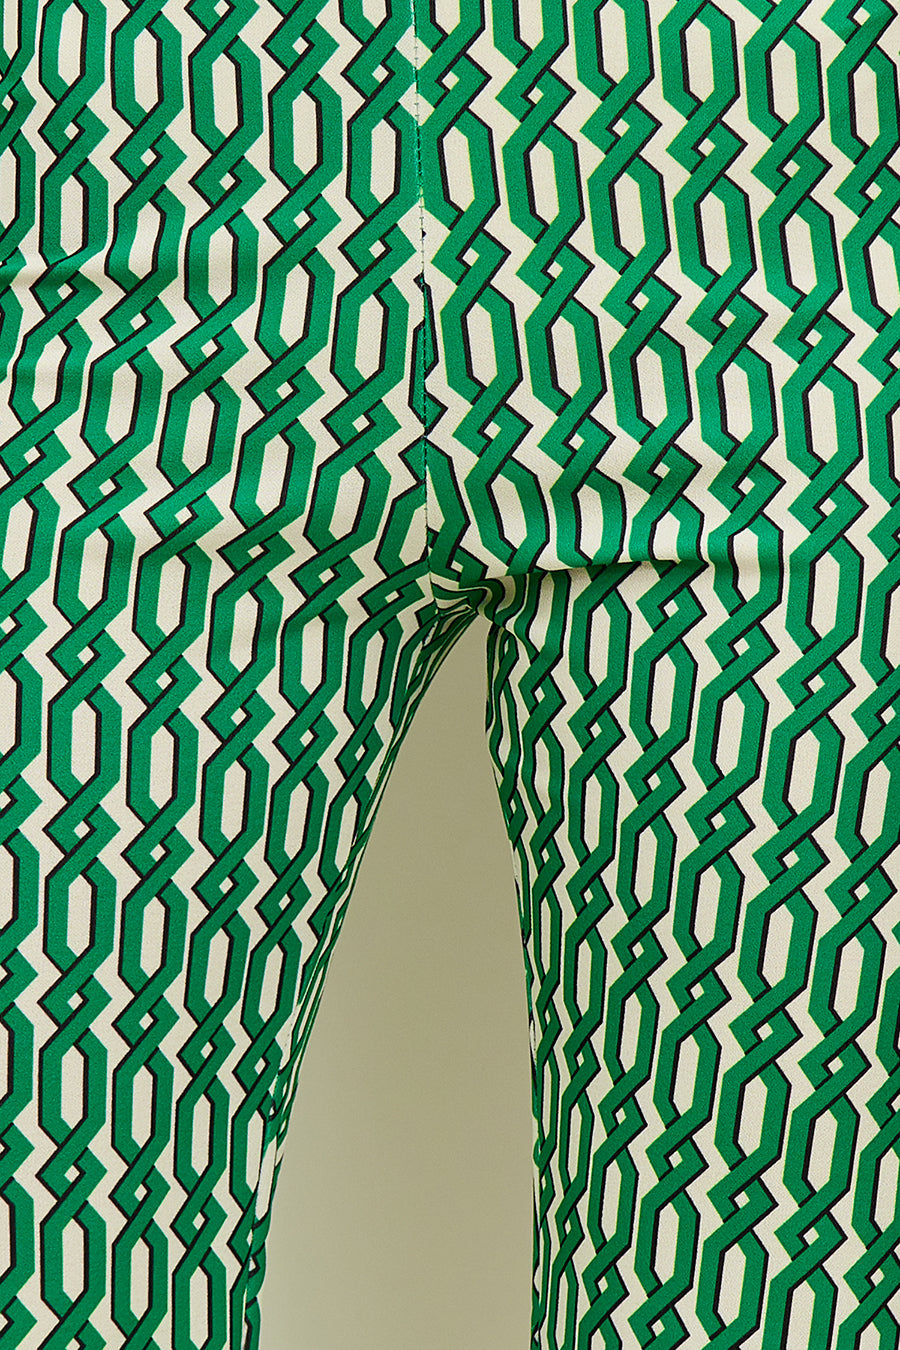 Γυναικείο παντελόνι Ranya, Πράσινο 4